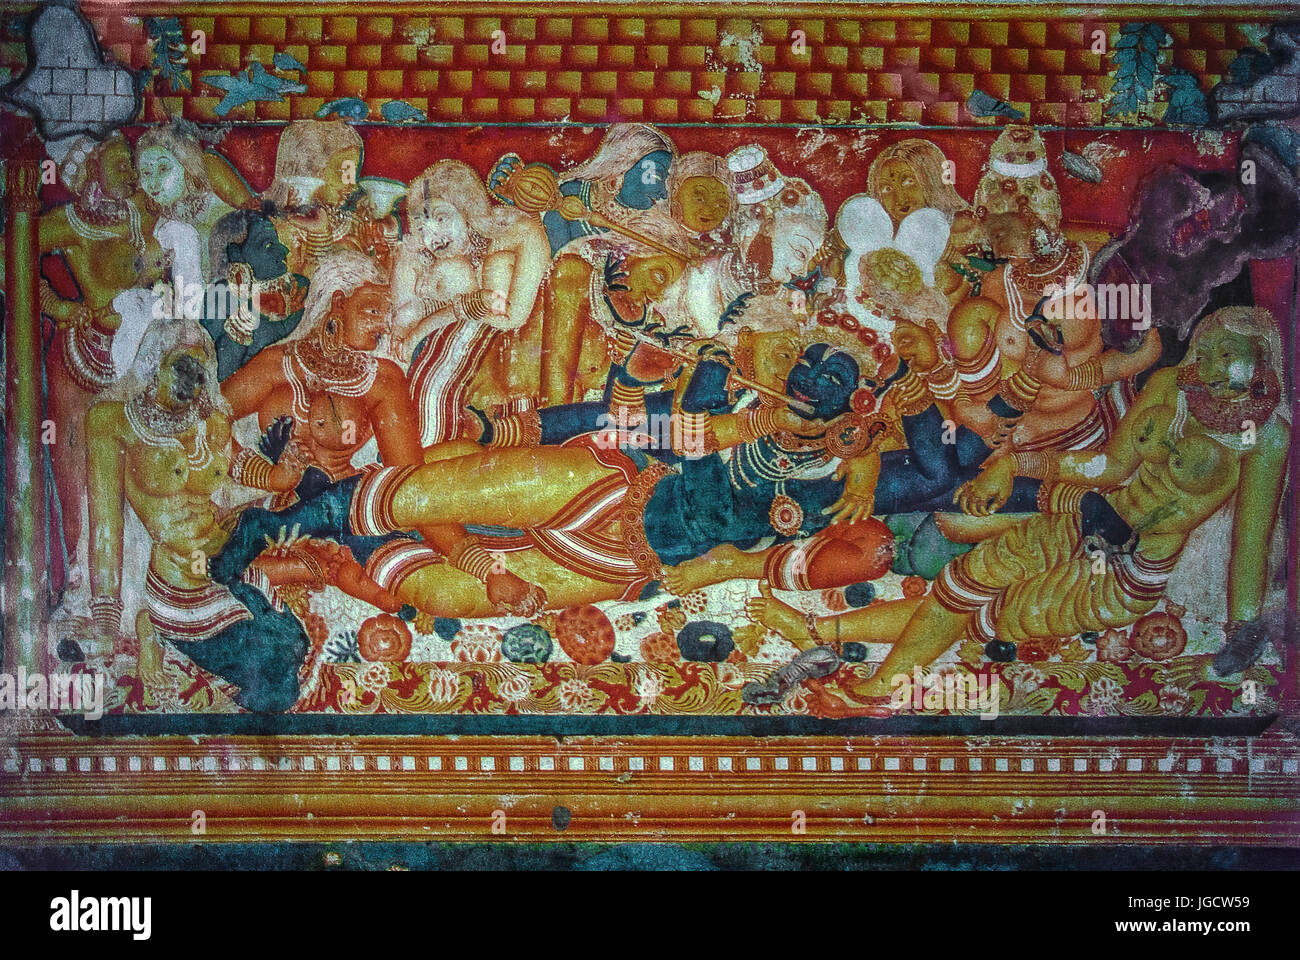 Krishna und Gopis Malerei, Mattancherry Palace, Kochi, Kerala, Indien, Asien-Aad 256515 Stockfoto